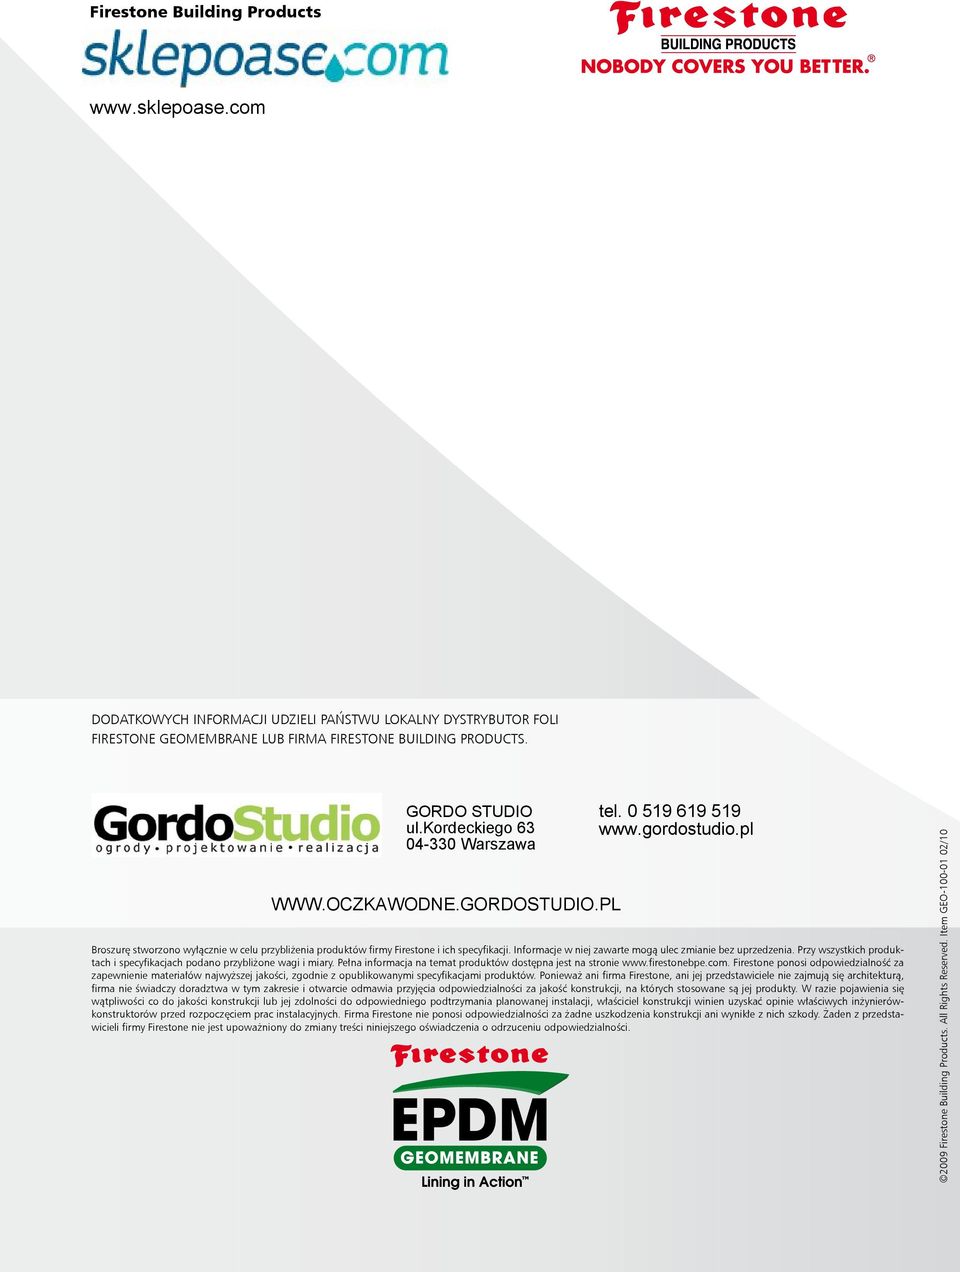 GORDOSTUDIO.PL tel. 0 519 619 519 www.gordostudio.pl Broszurę stworzono wyłącznie w celu przybliżenia produktów firmy Firestone i ich specyfikacji.